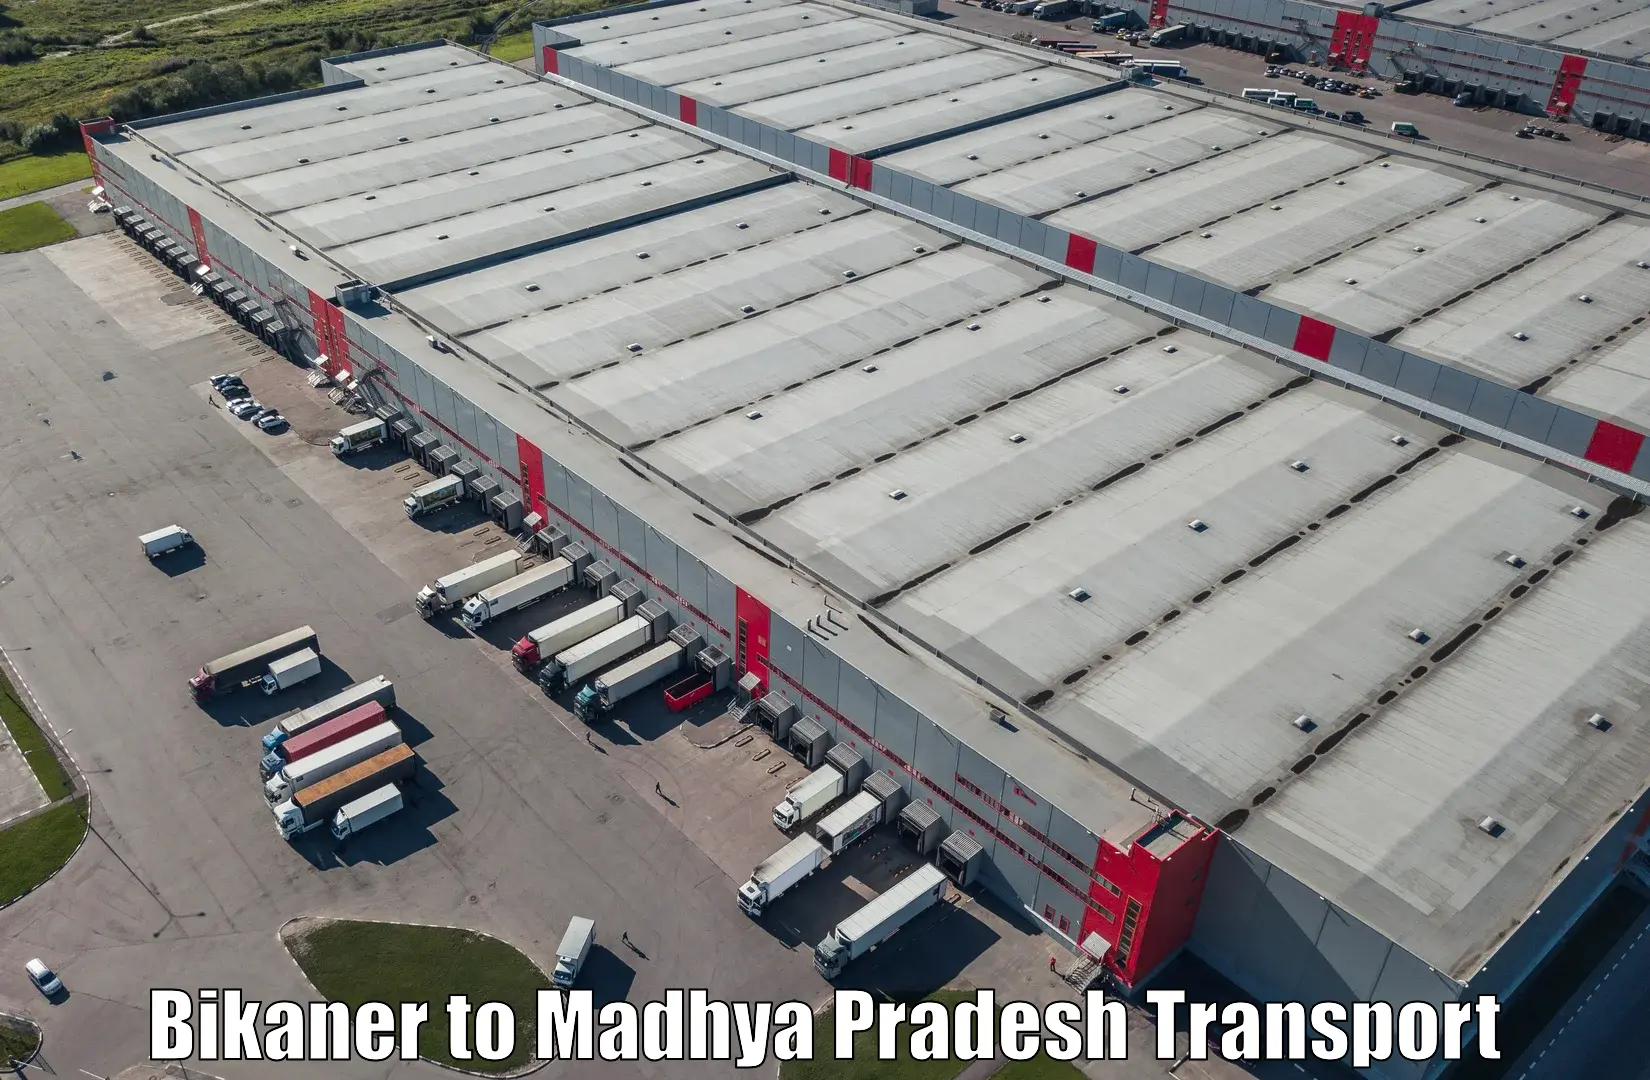 Cargo transportation services Bikaner to Chand Chaurai